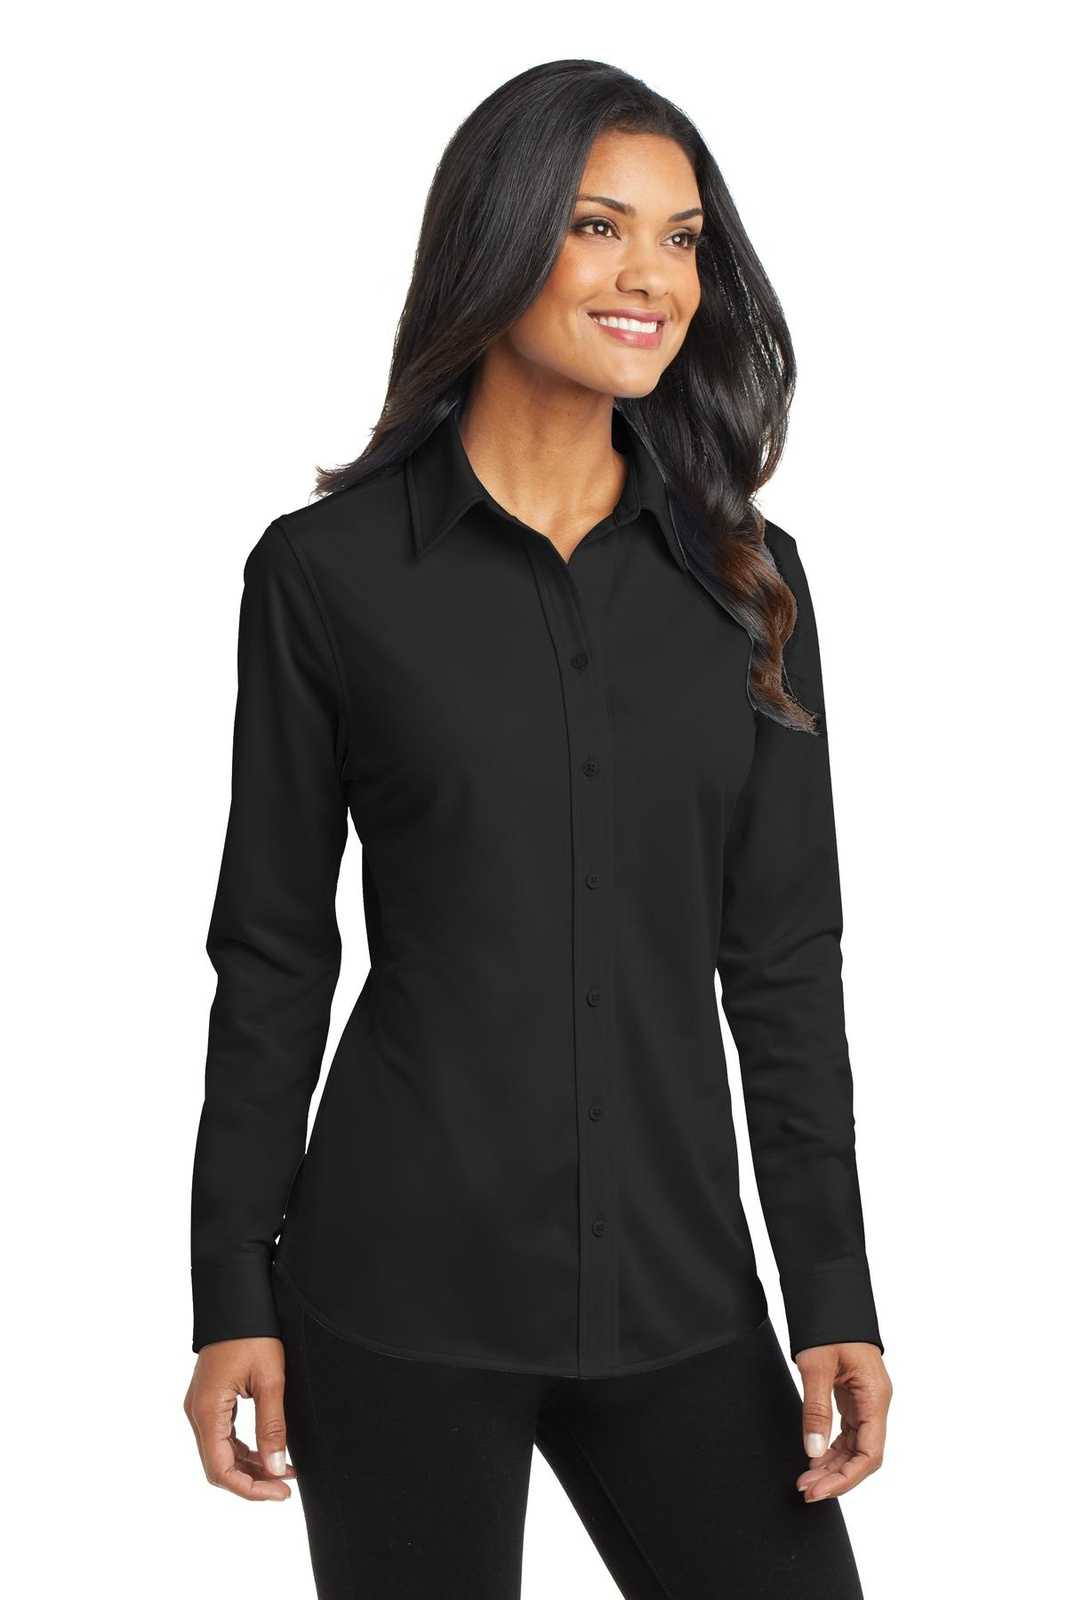 Port Authority L570 Ladies Dimension Knit Dress Shirt - Black - HIT a Double - 4